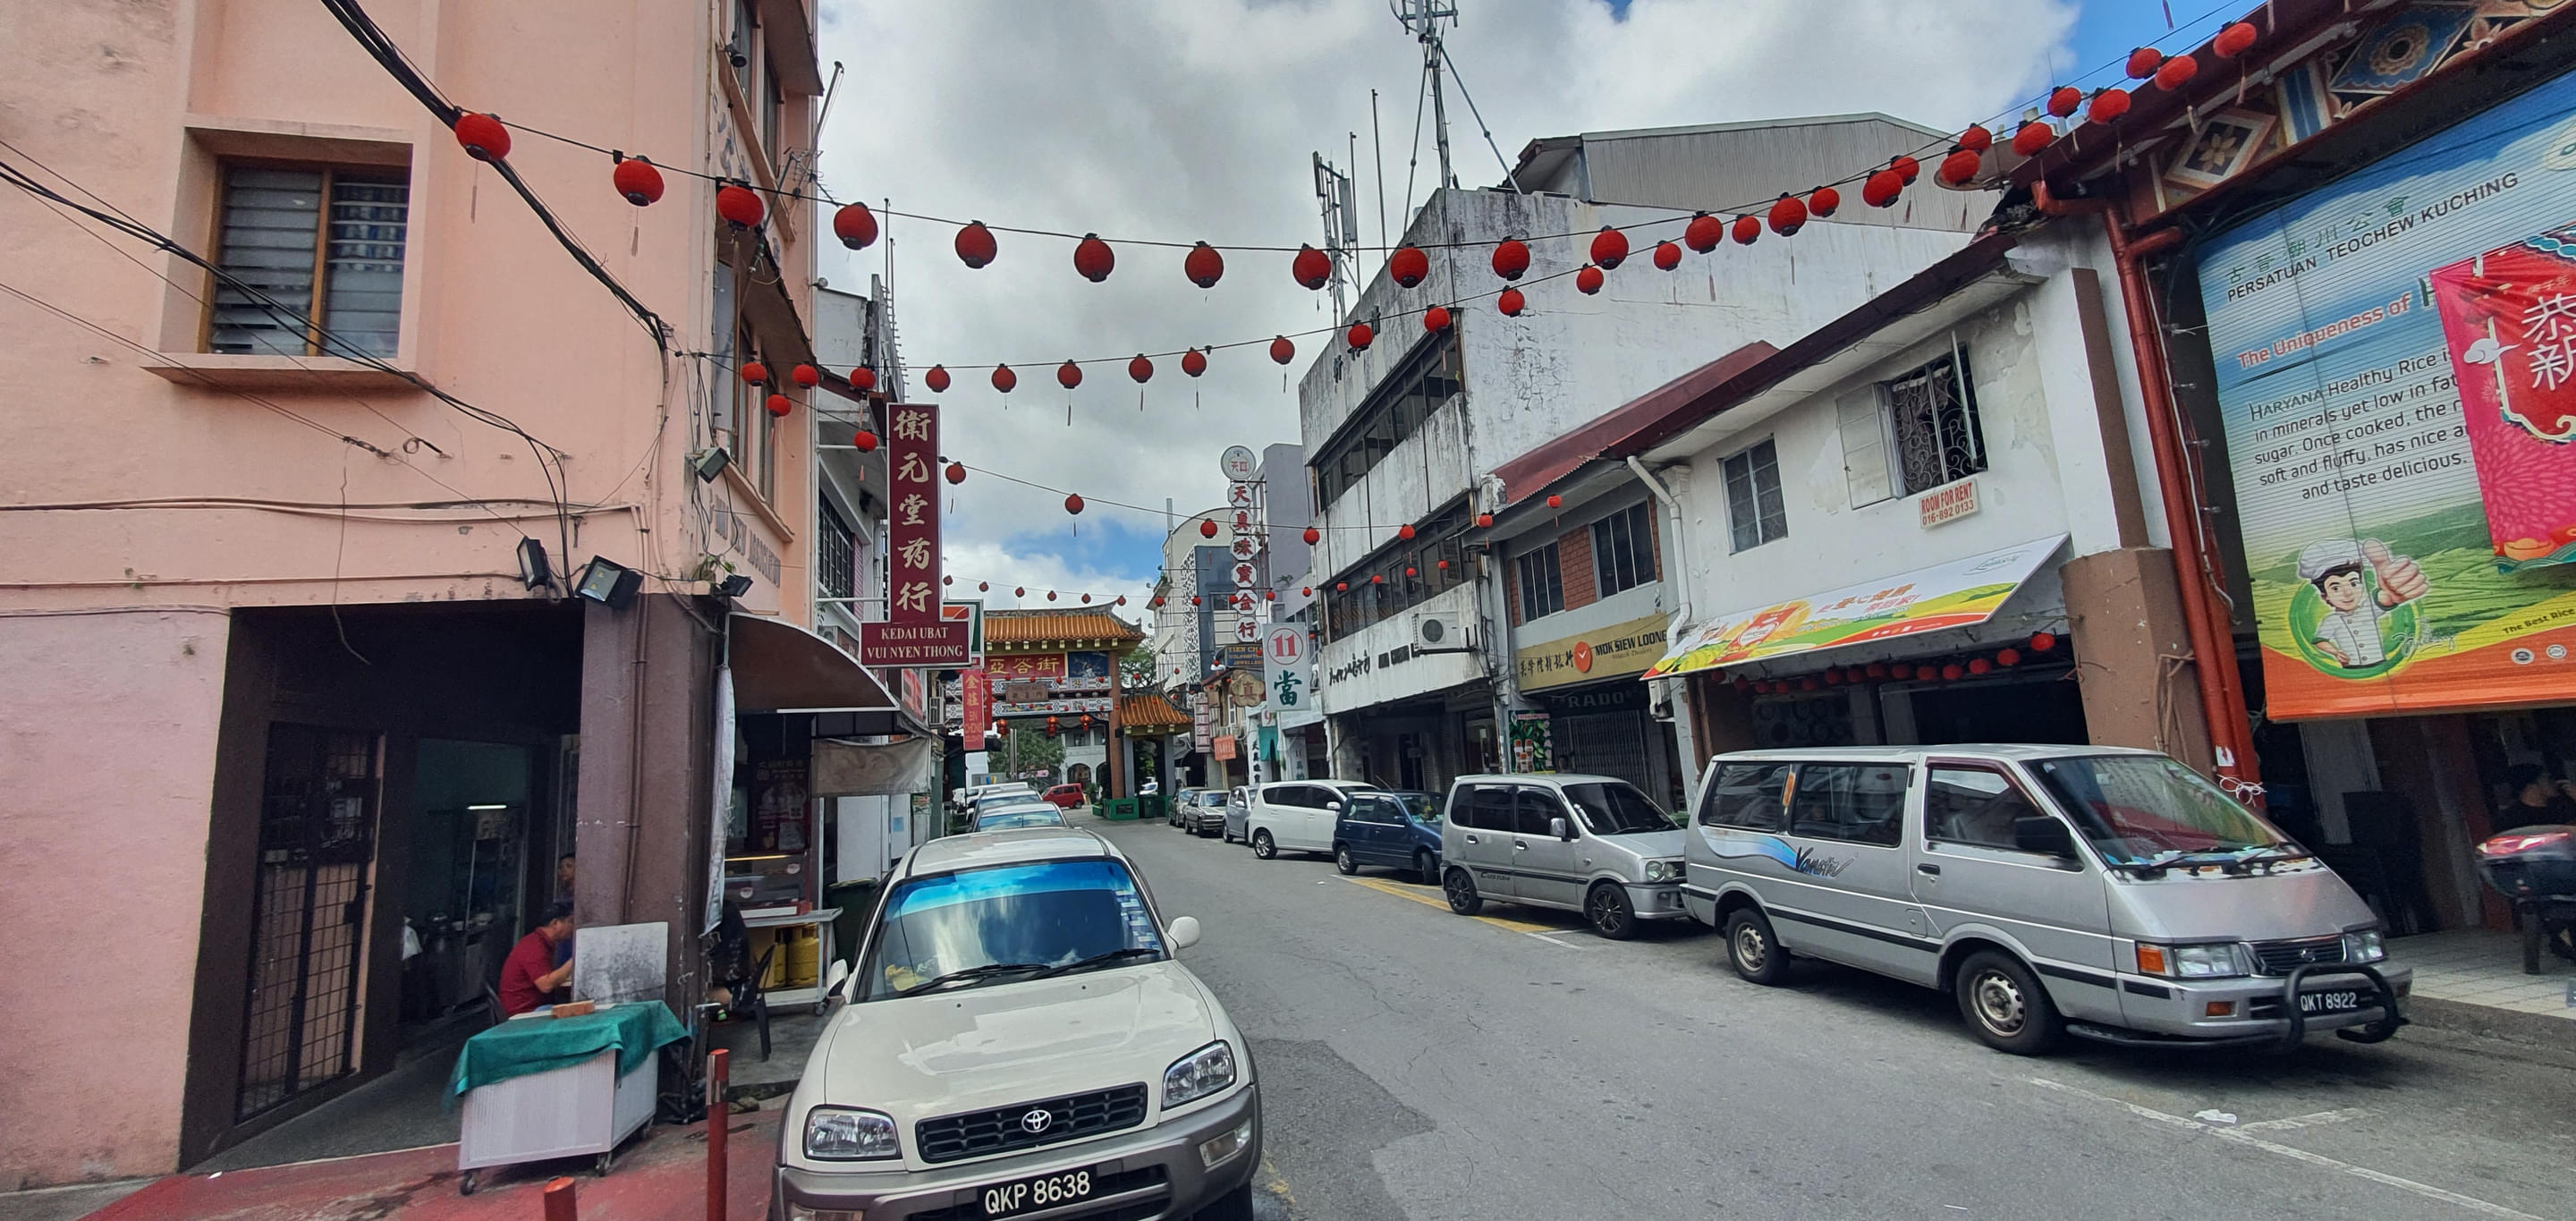 Kuching Main Bazaar Overview